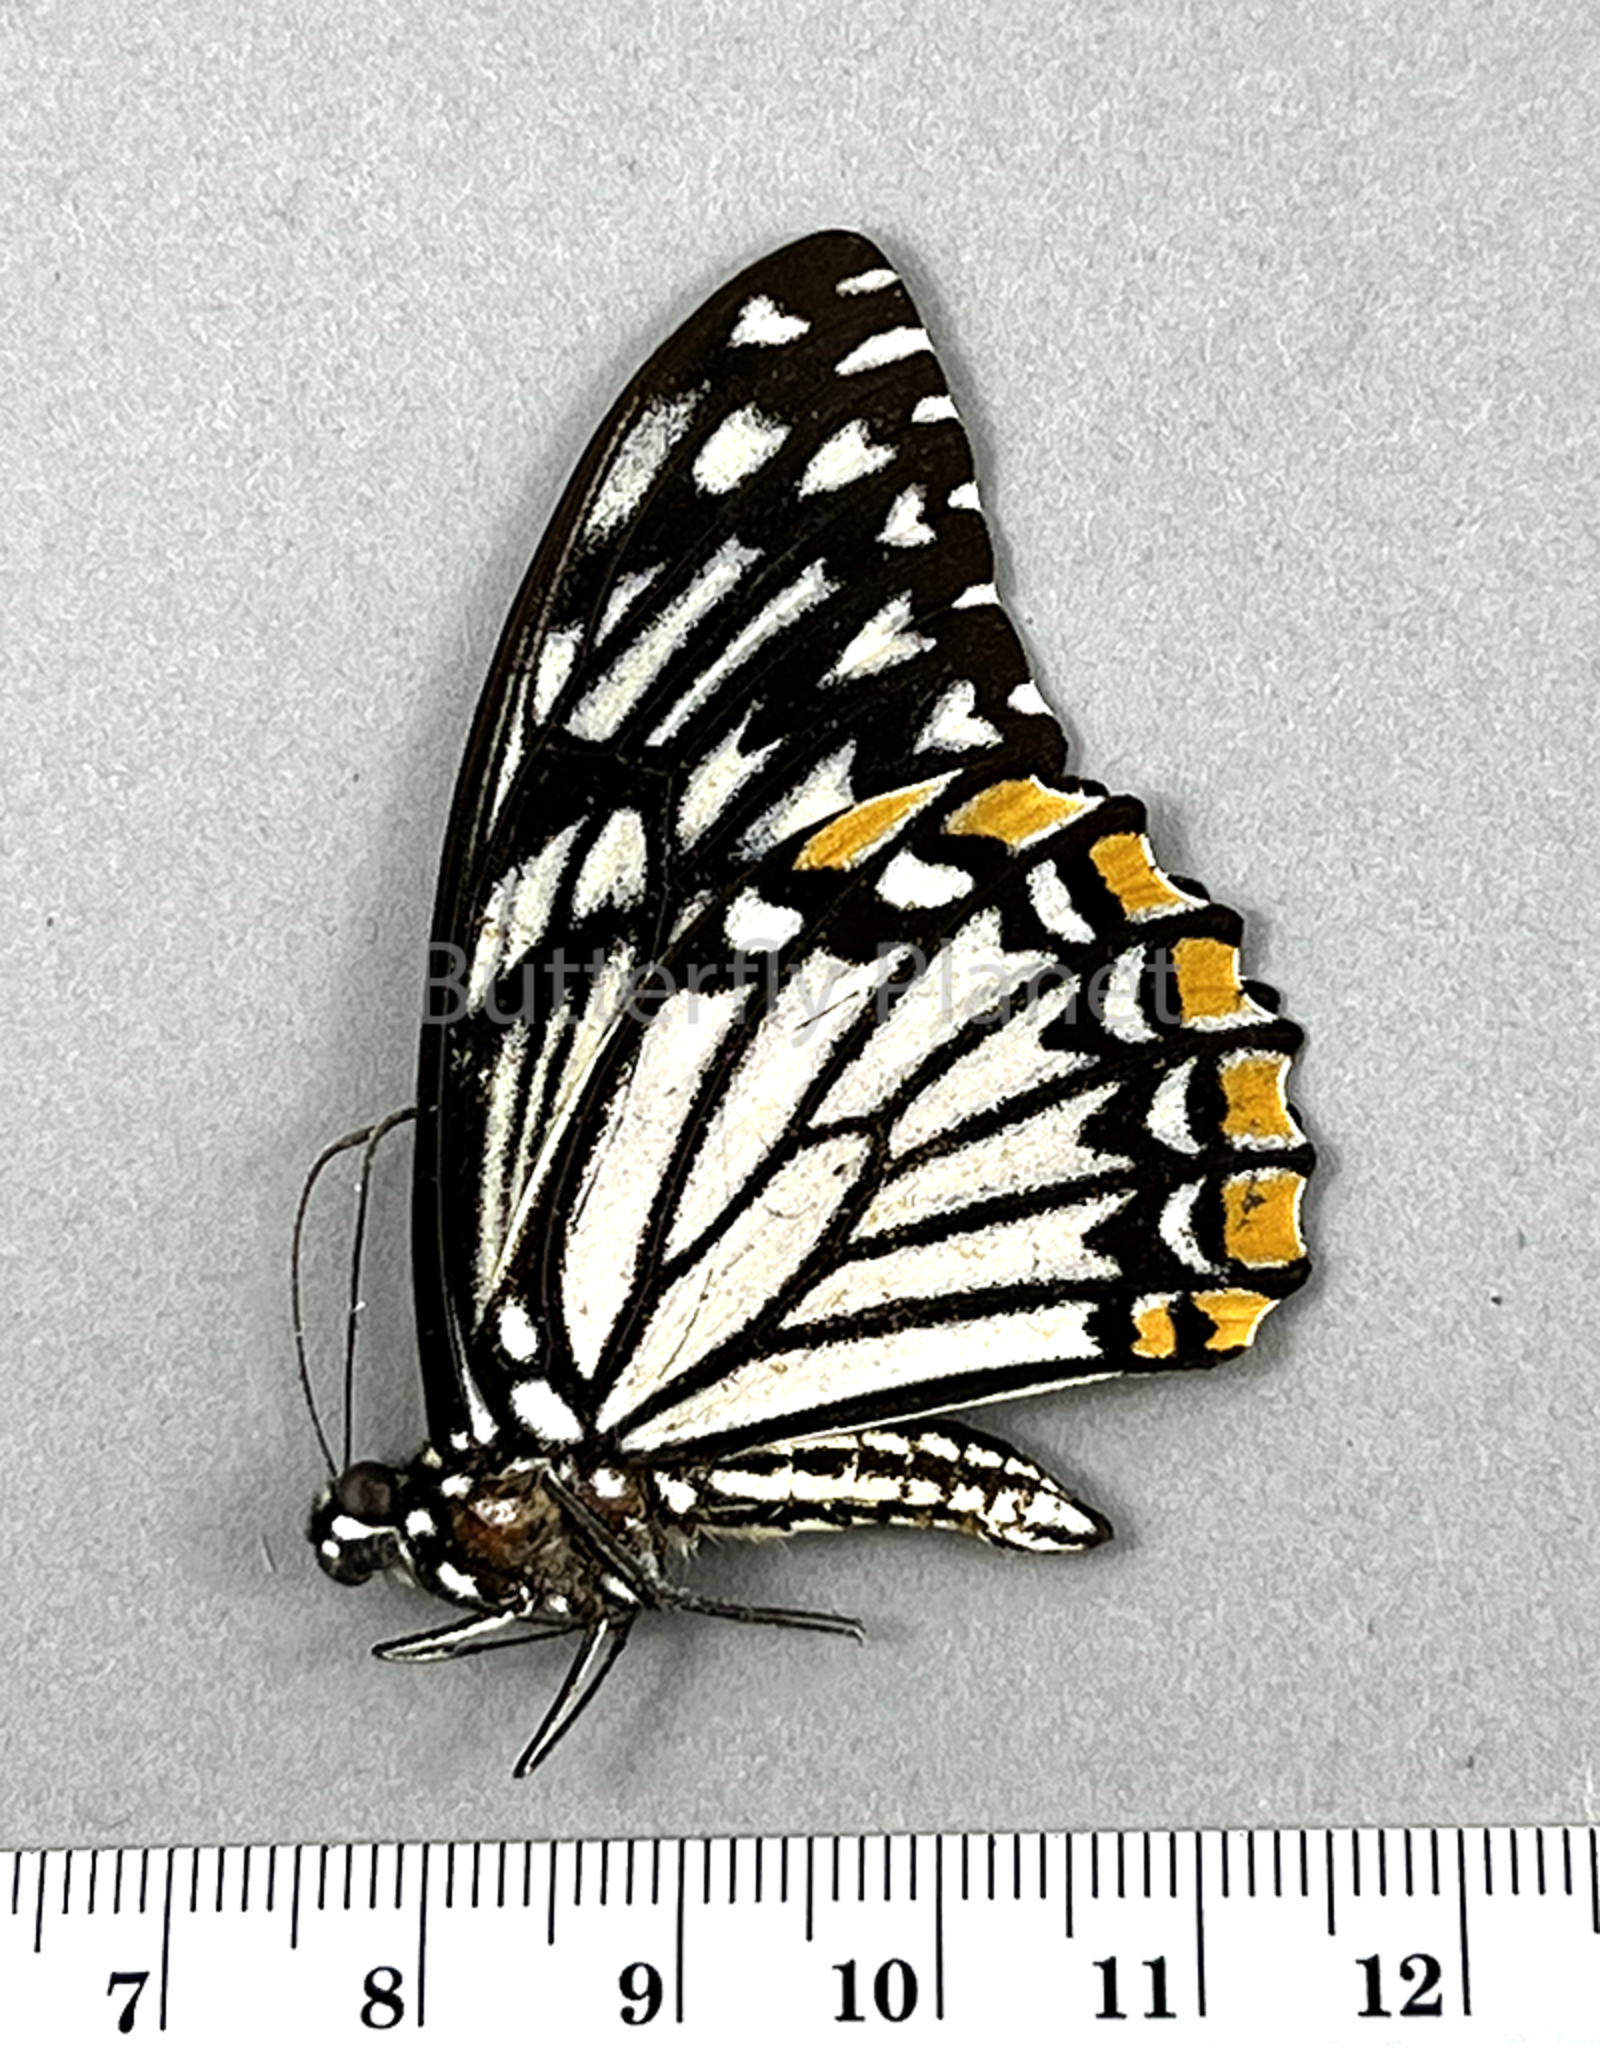 Chilasa clytia lankeswara white form M A1- Sri Lanka